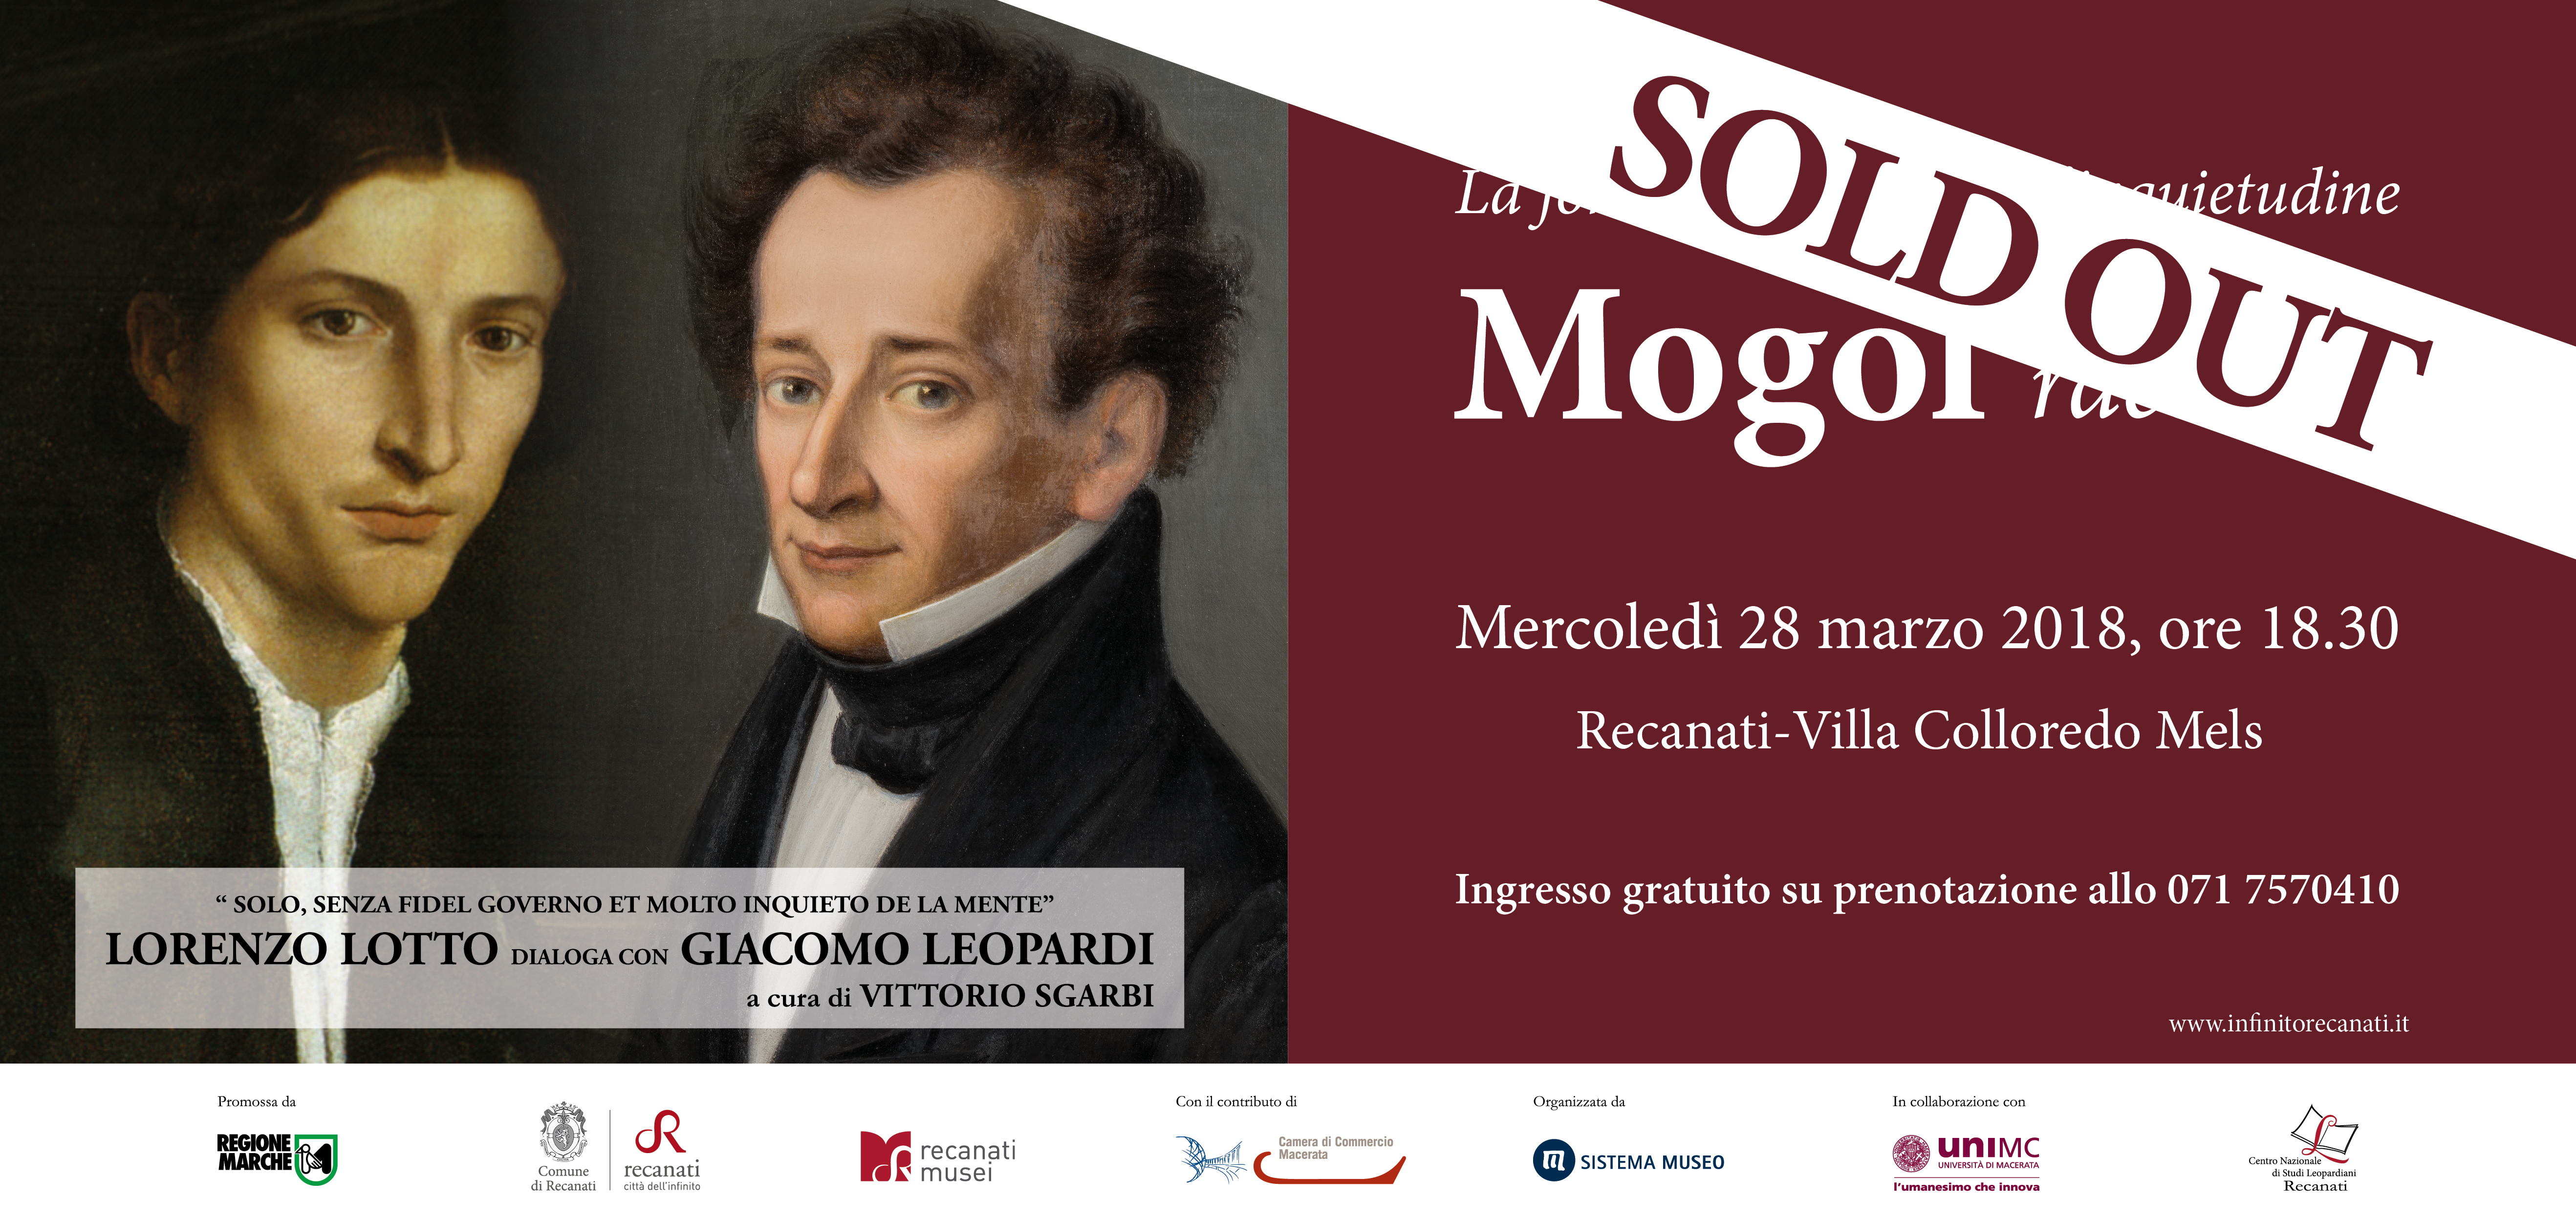 SOLD OUT | Ospite speciale a Recanati: Mogol dialoga tra arte, poesia e musica